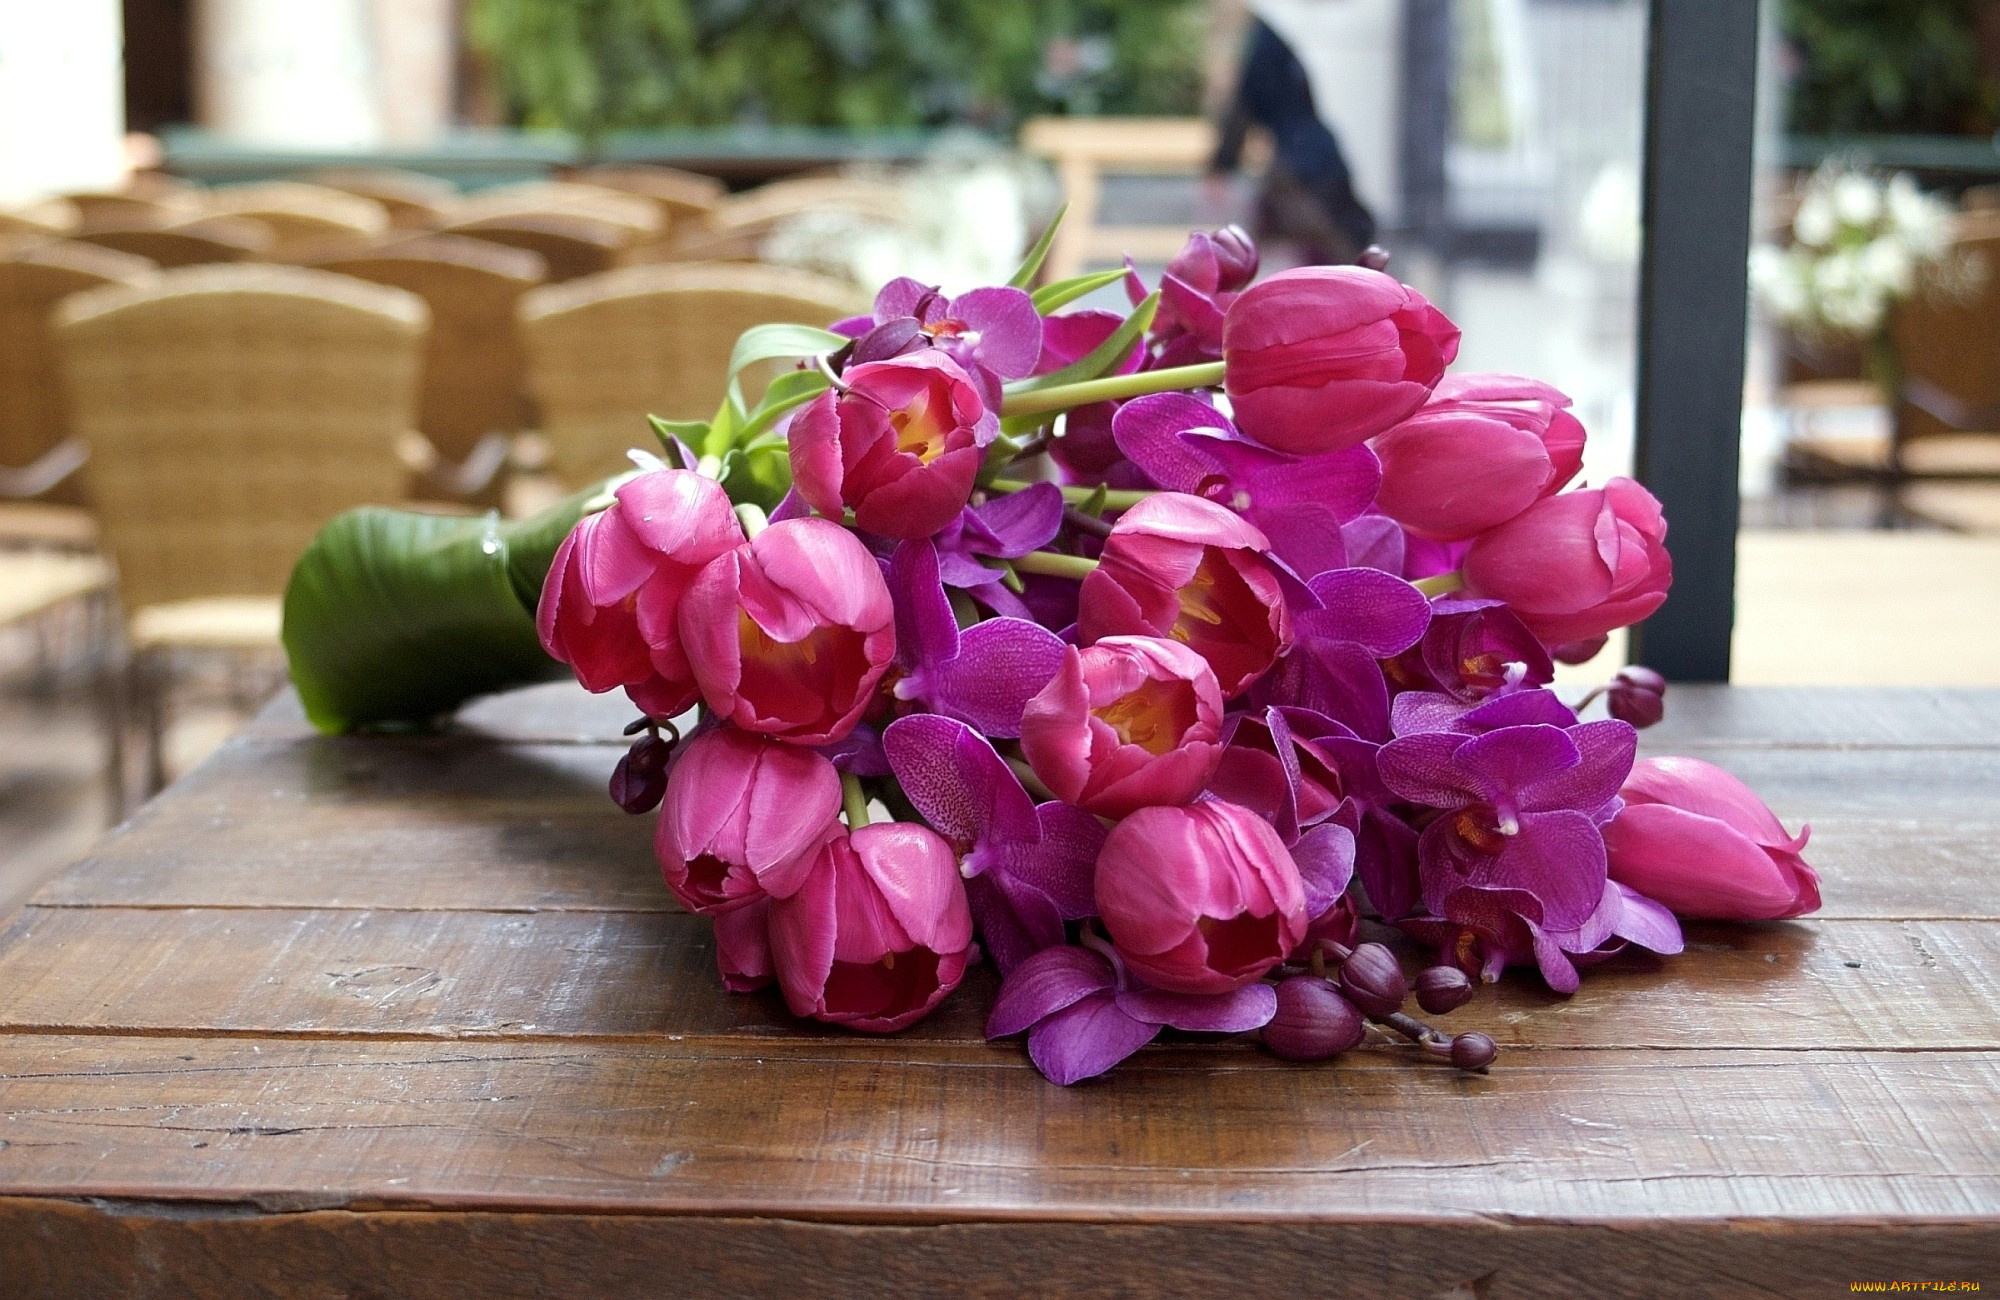 Картинка с цветами на столе. Букет весенних цветов. Цветы тюльпаны. Цветы на столе. Роскошные весенние цветы.